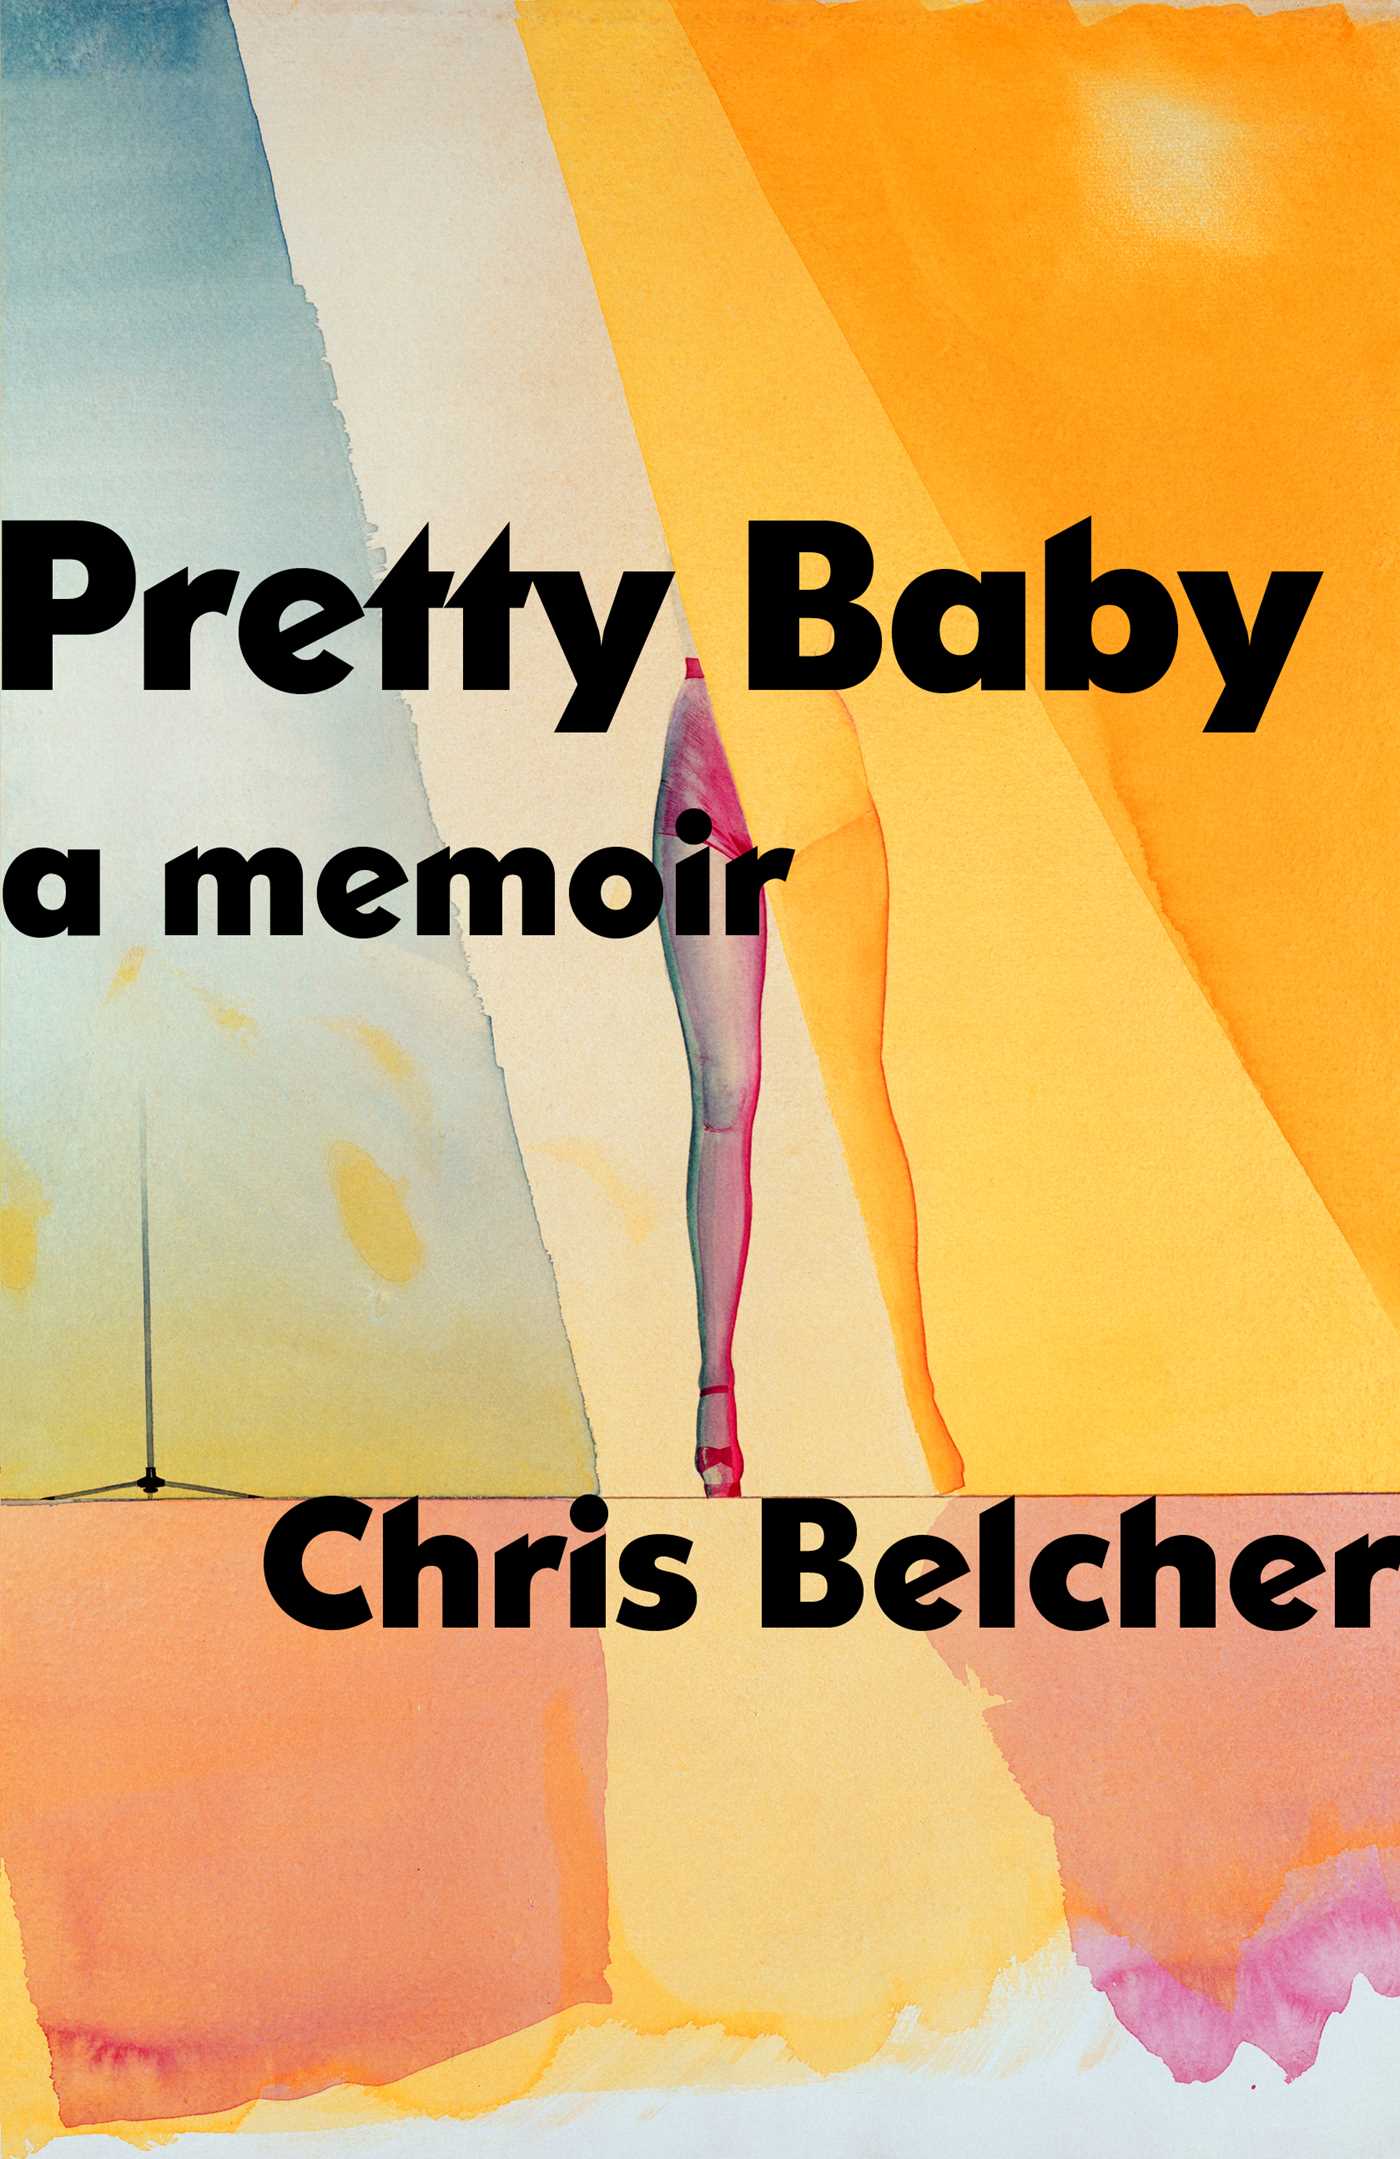 Pretty Baby is the memoir of Chris Belcher